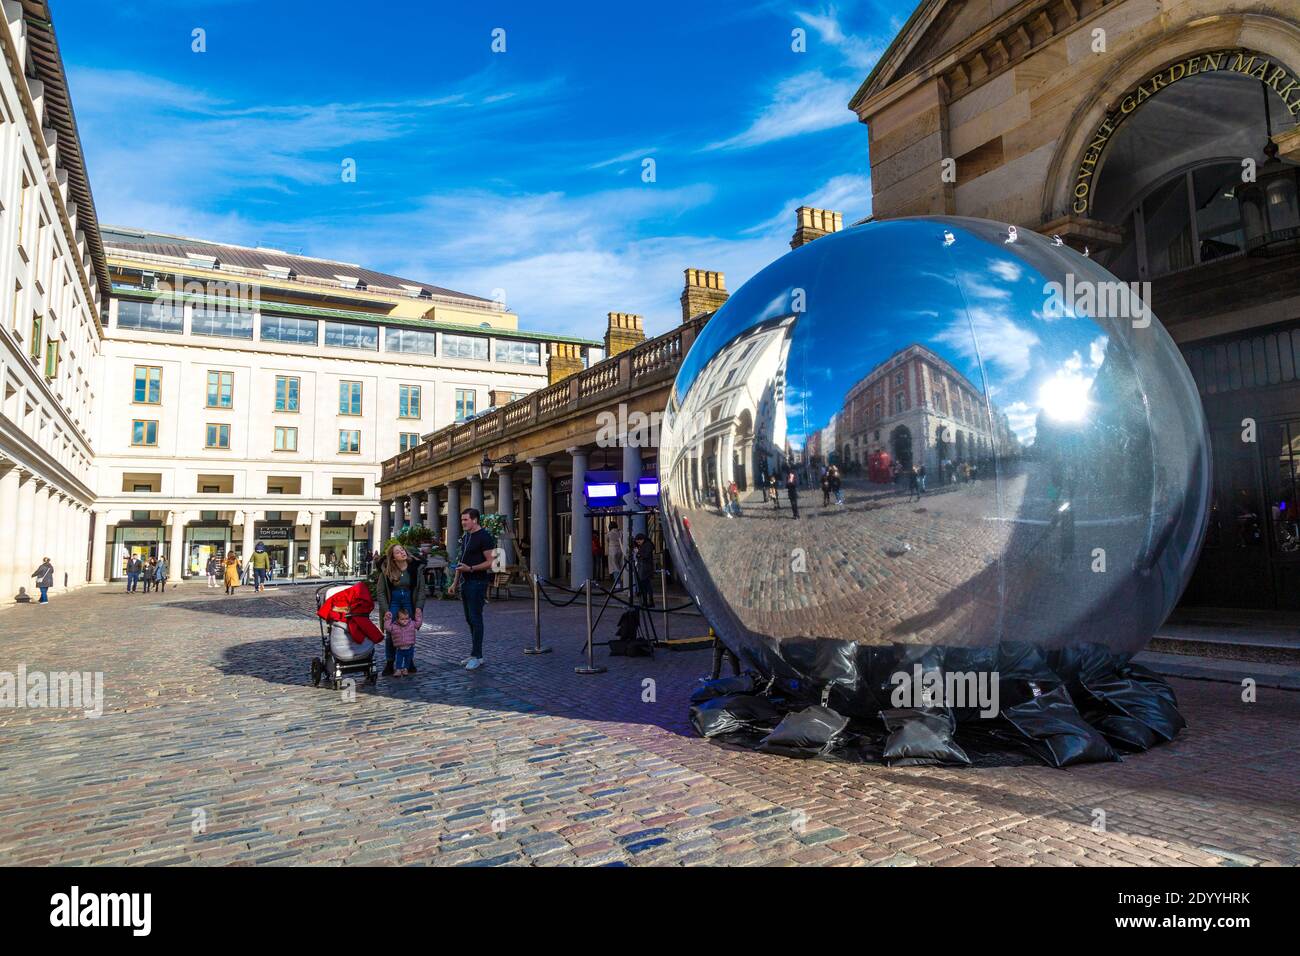 Ballon miroir gonflable géant au marché Covent Garden, Londres, Royaume-Uni Banque D'Images